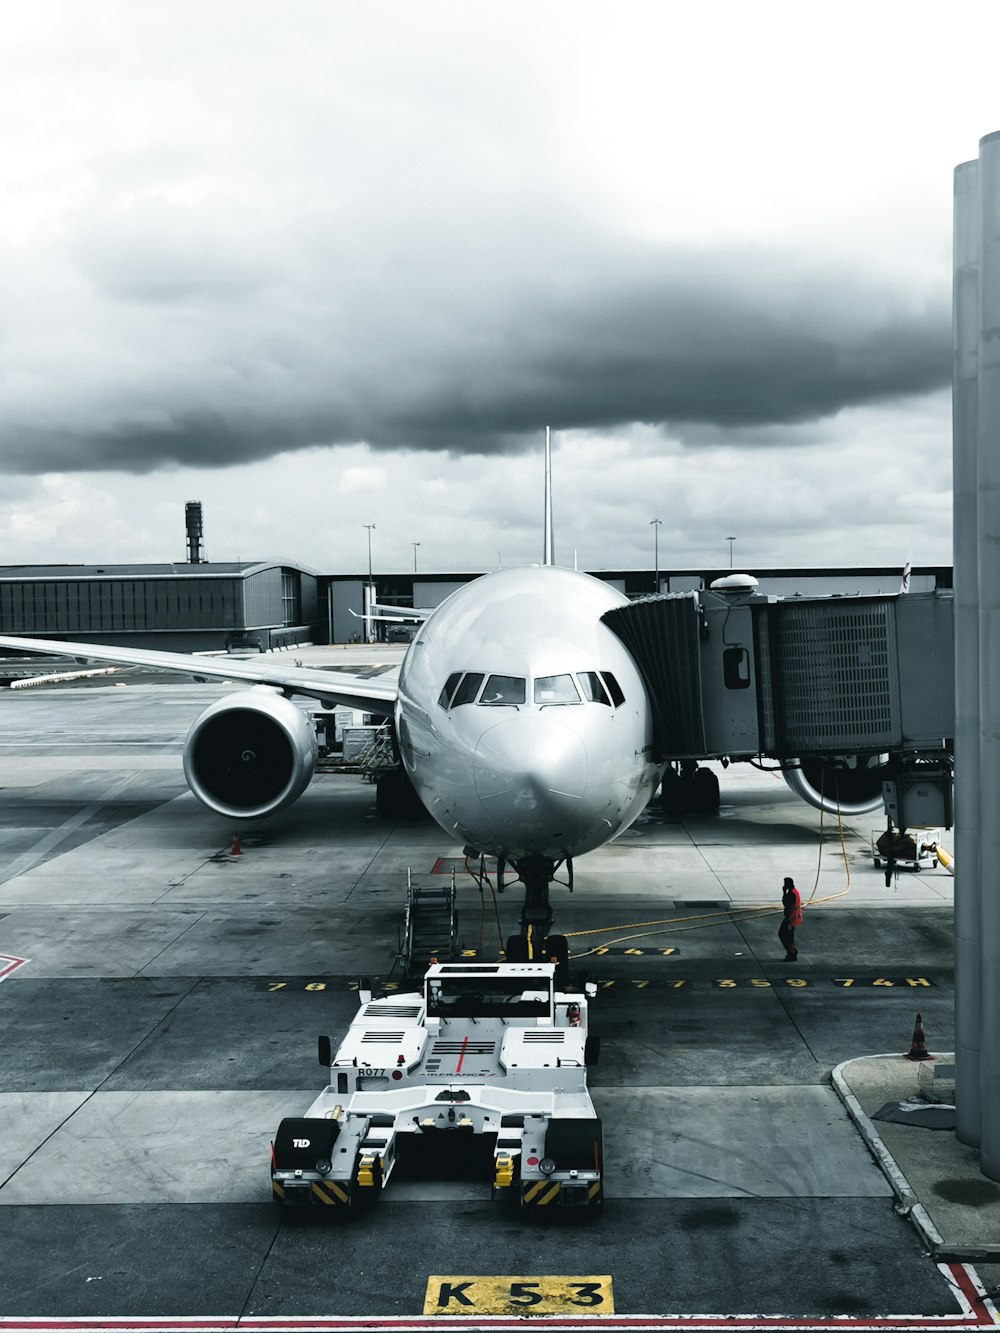 fotografia em tons de cinza do avião de passageiros